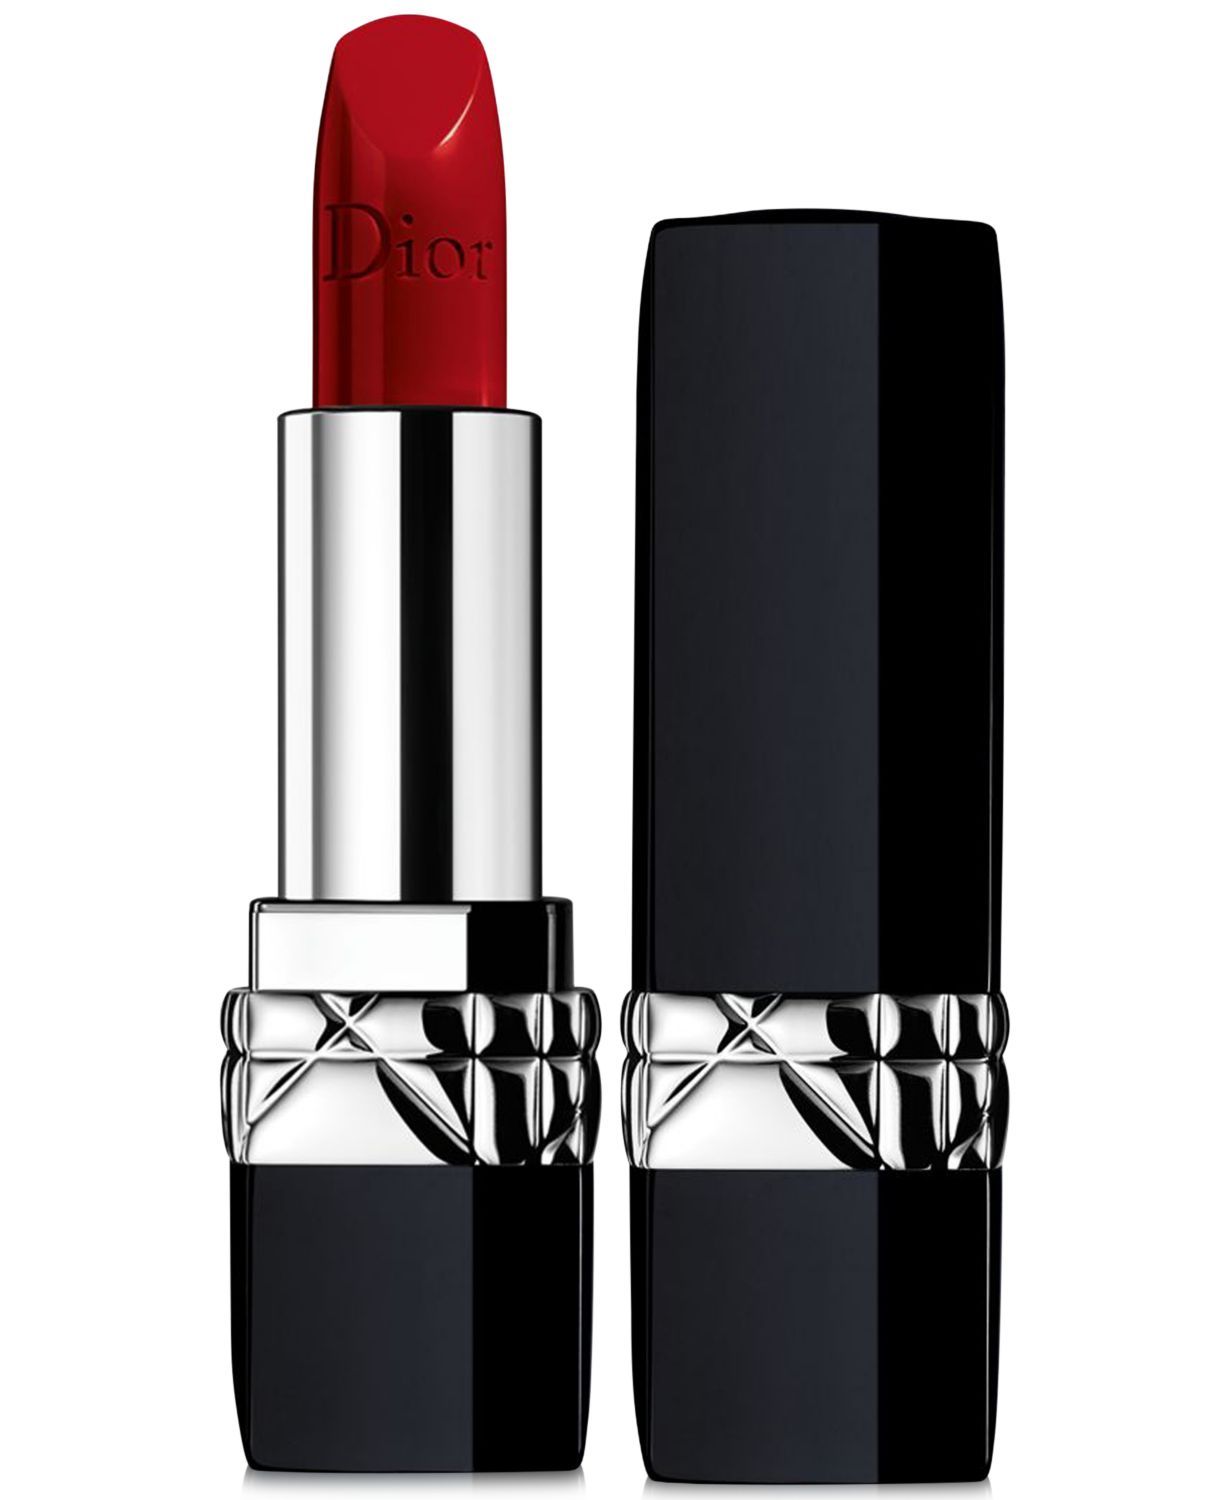 DIOR Addict Refillable Shine Lipstick 32g